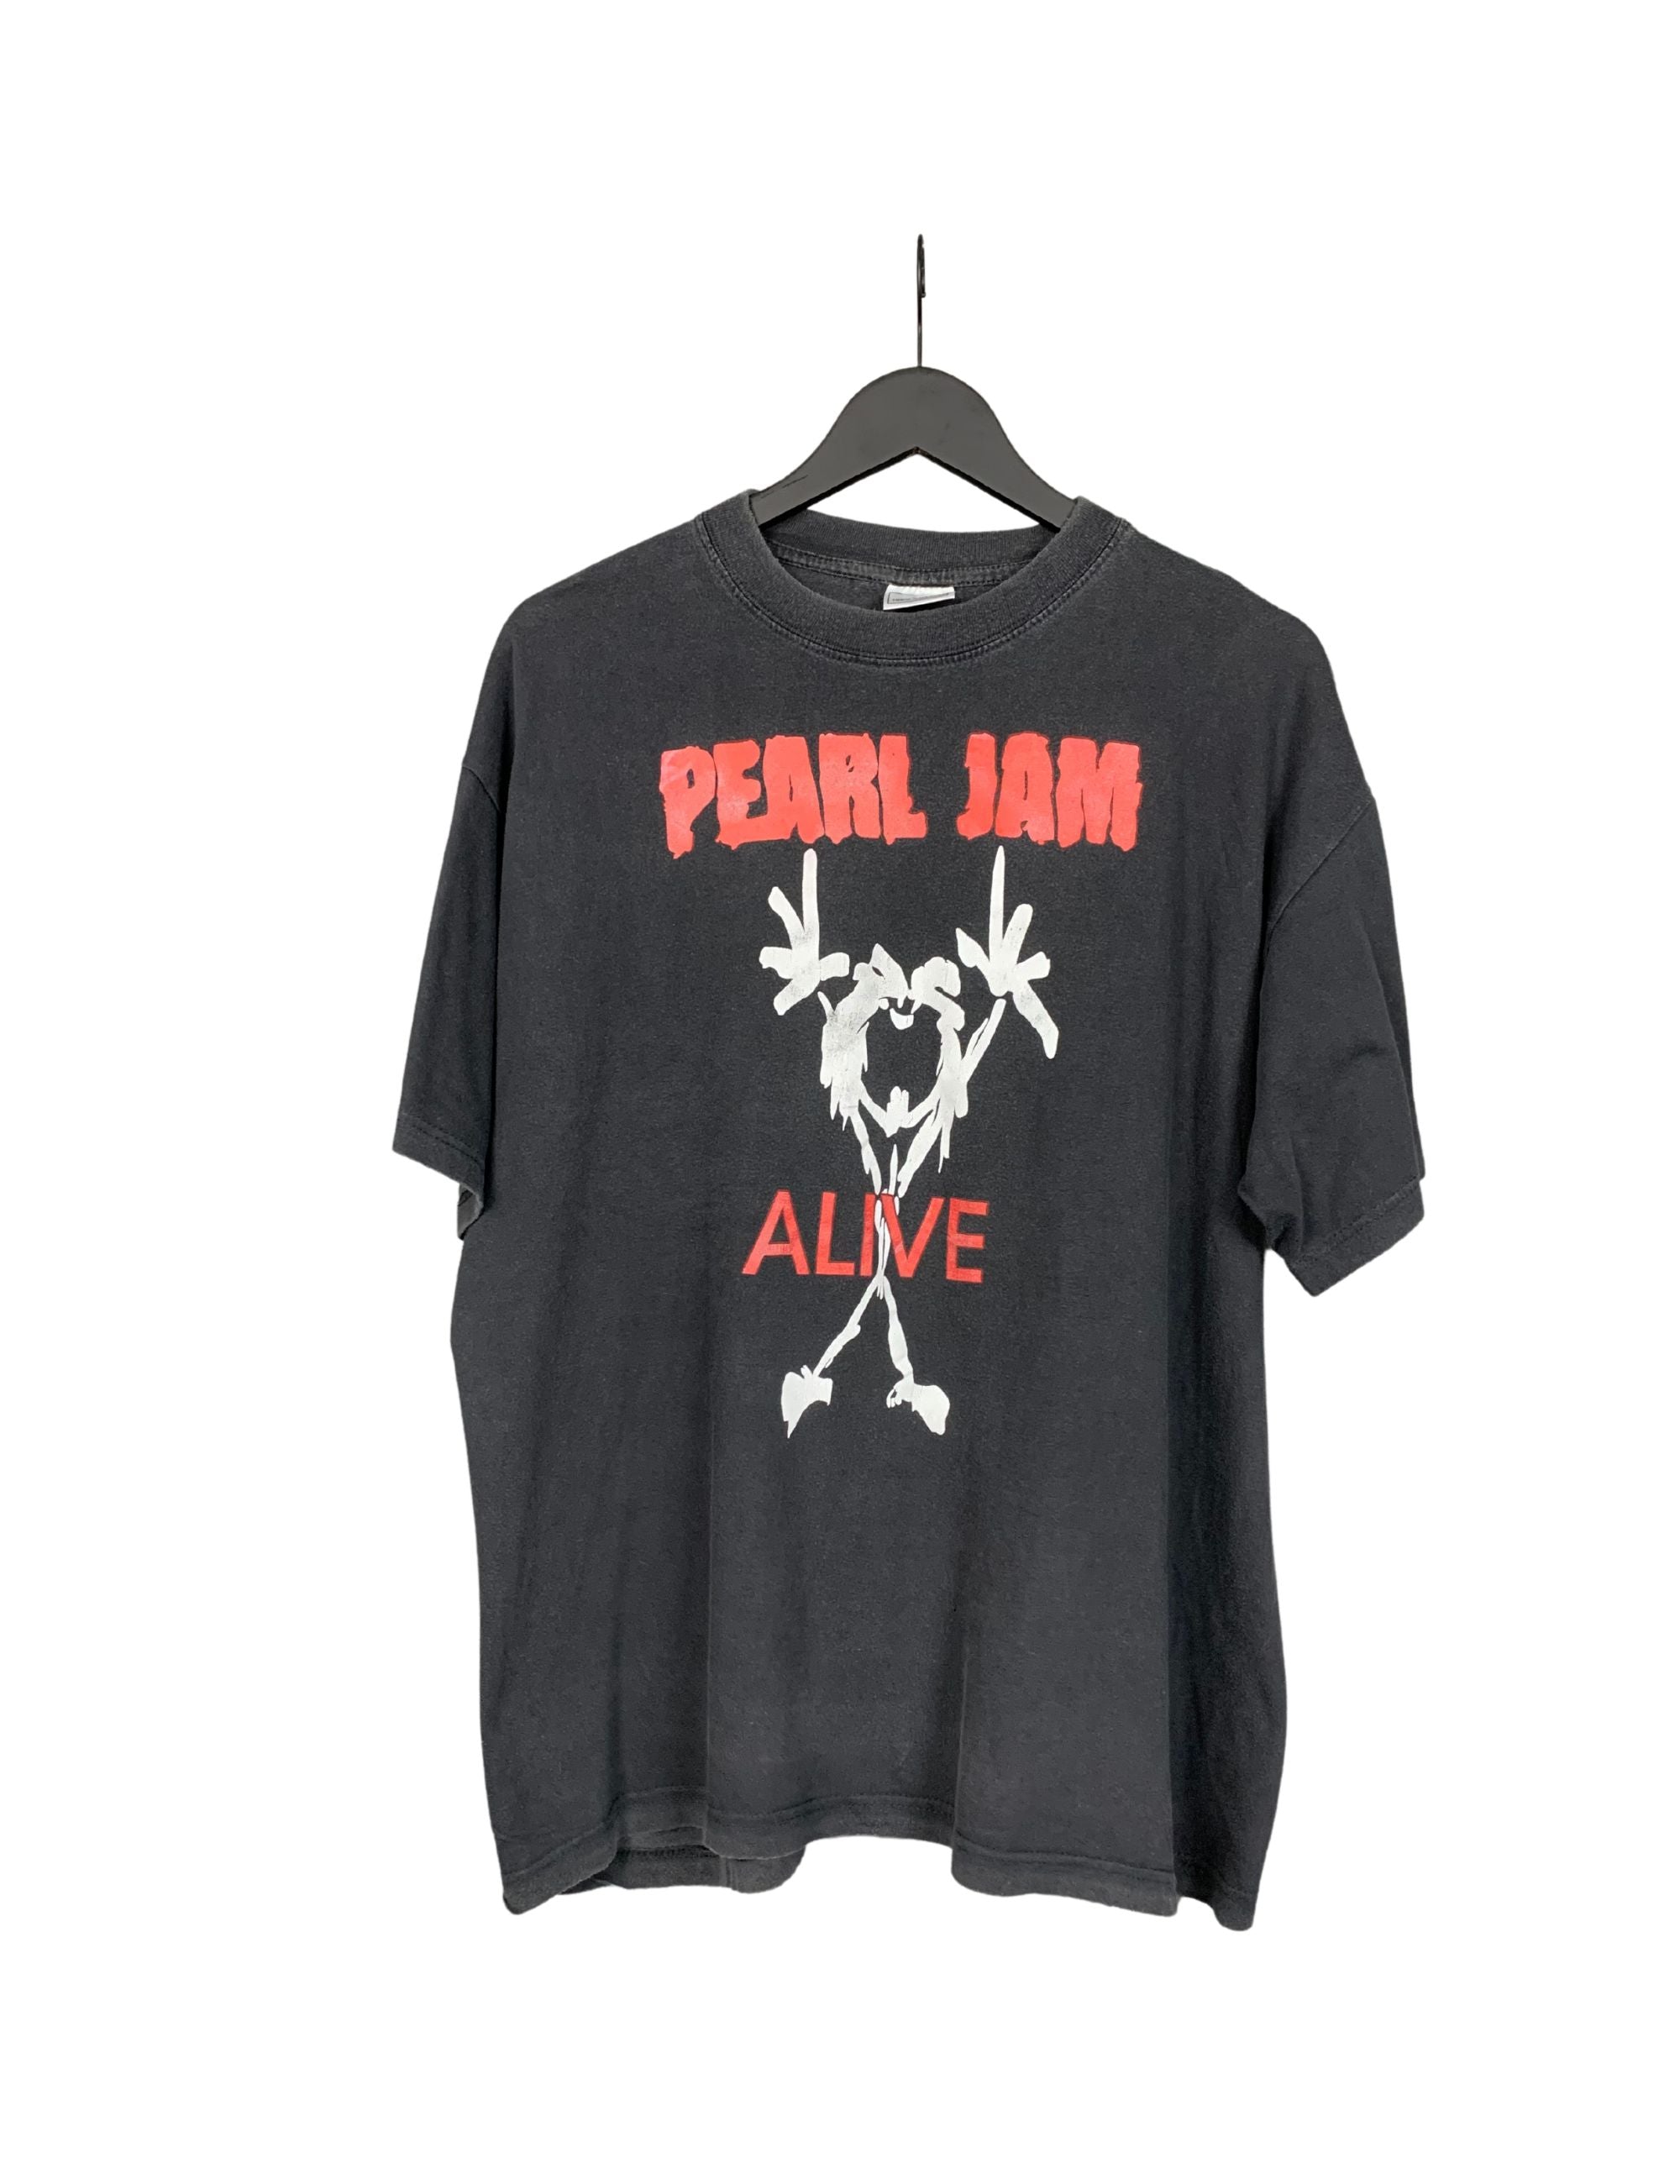 Pearl Jam 1991 Alive Vintage T-Shirt